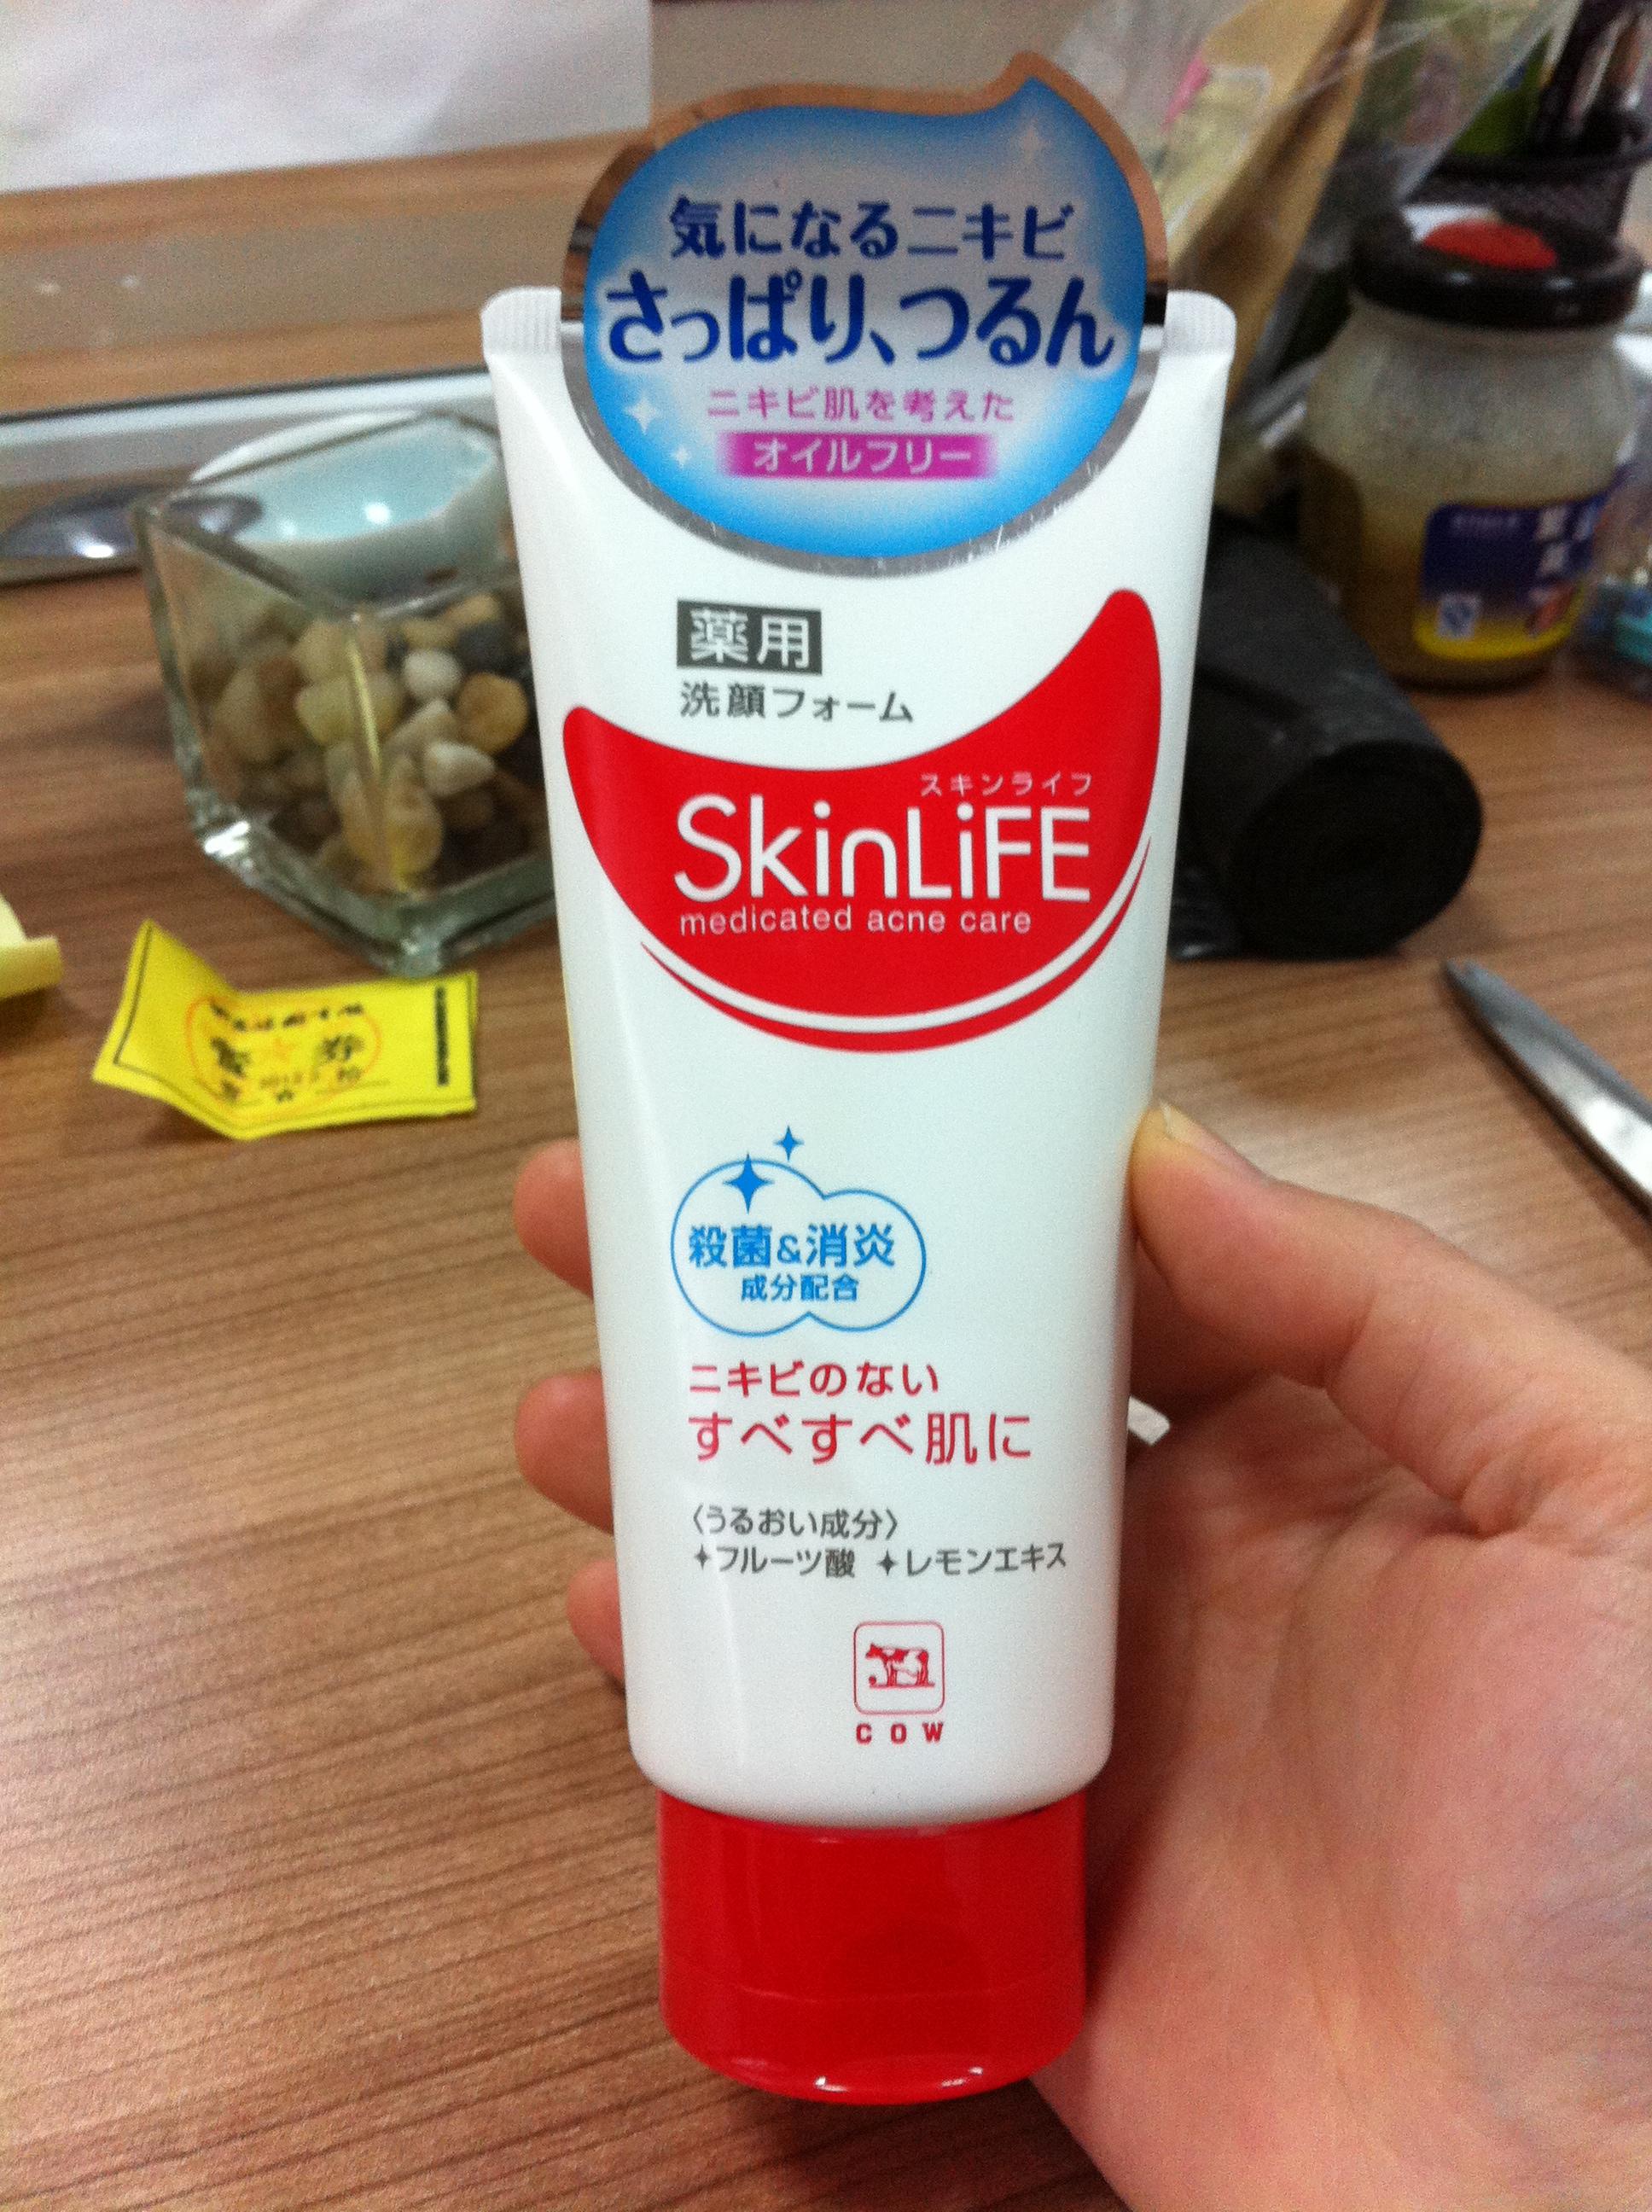 日本Cow牛乳 skinlife 祛痘洗面奶,大家用过没呀